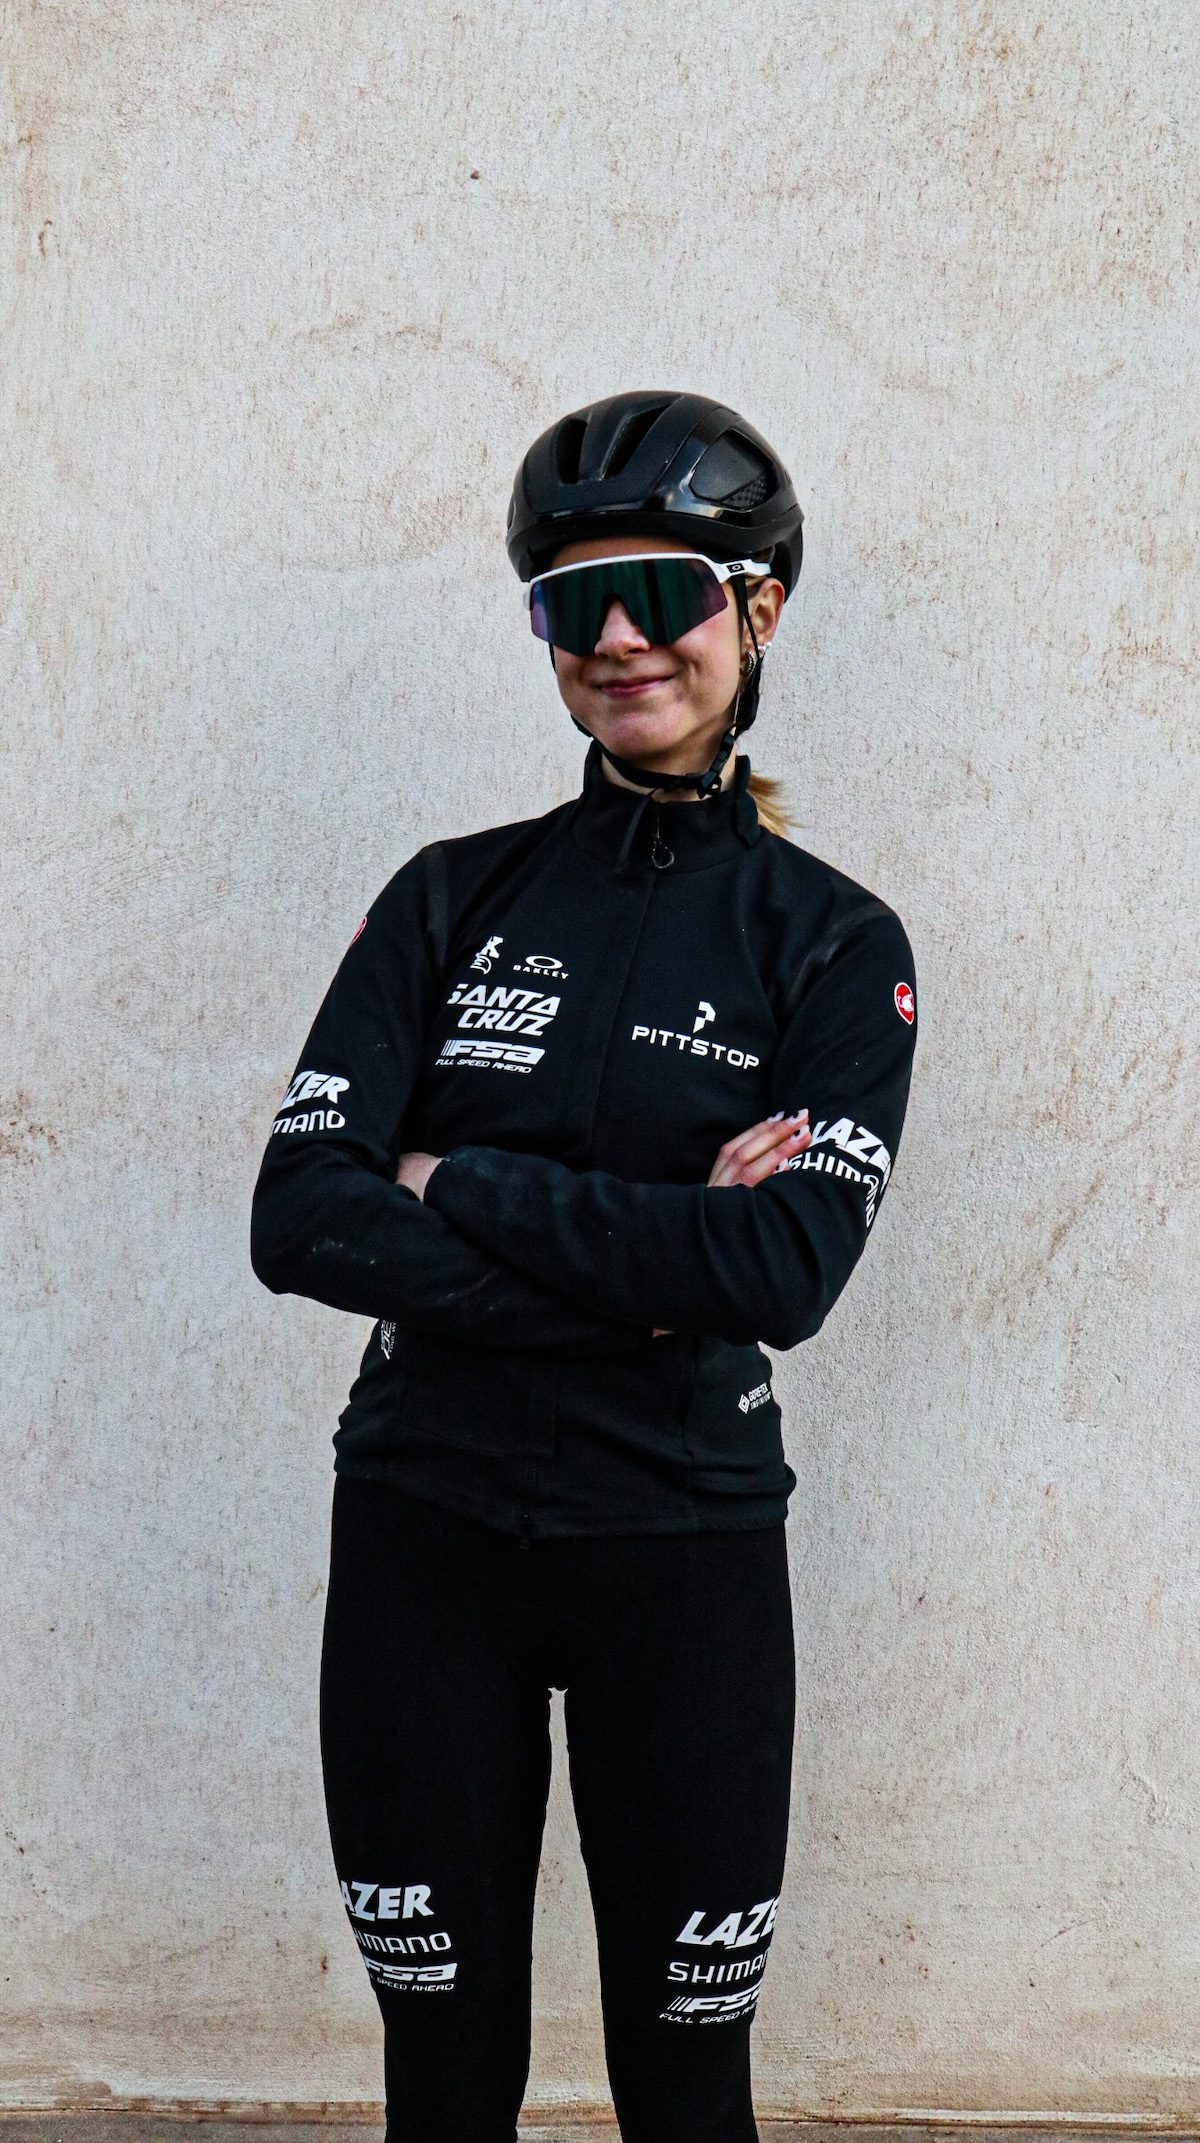 Laurie Arseneault of Pittstop Racing